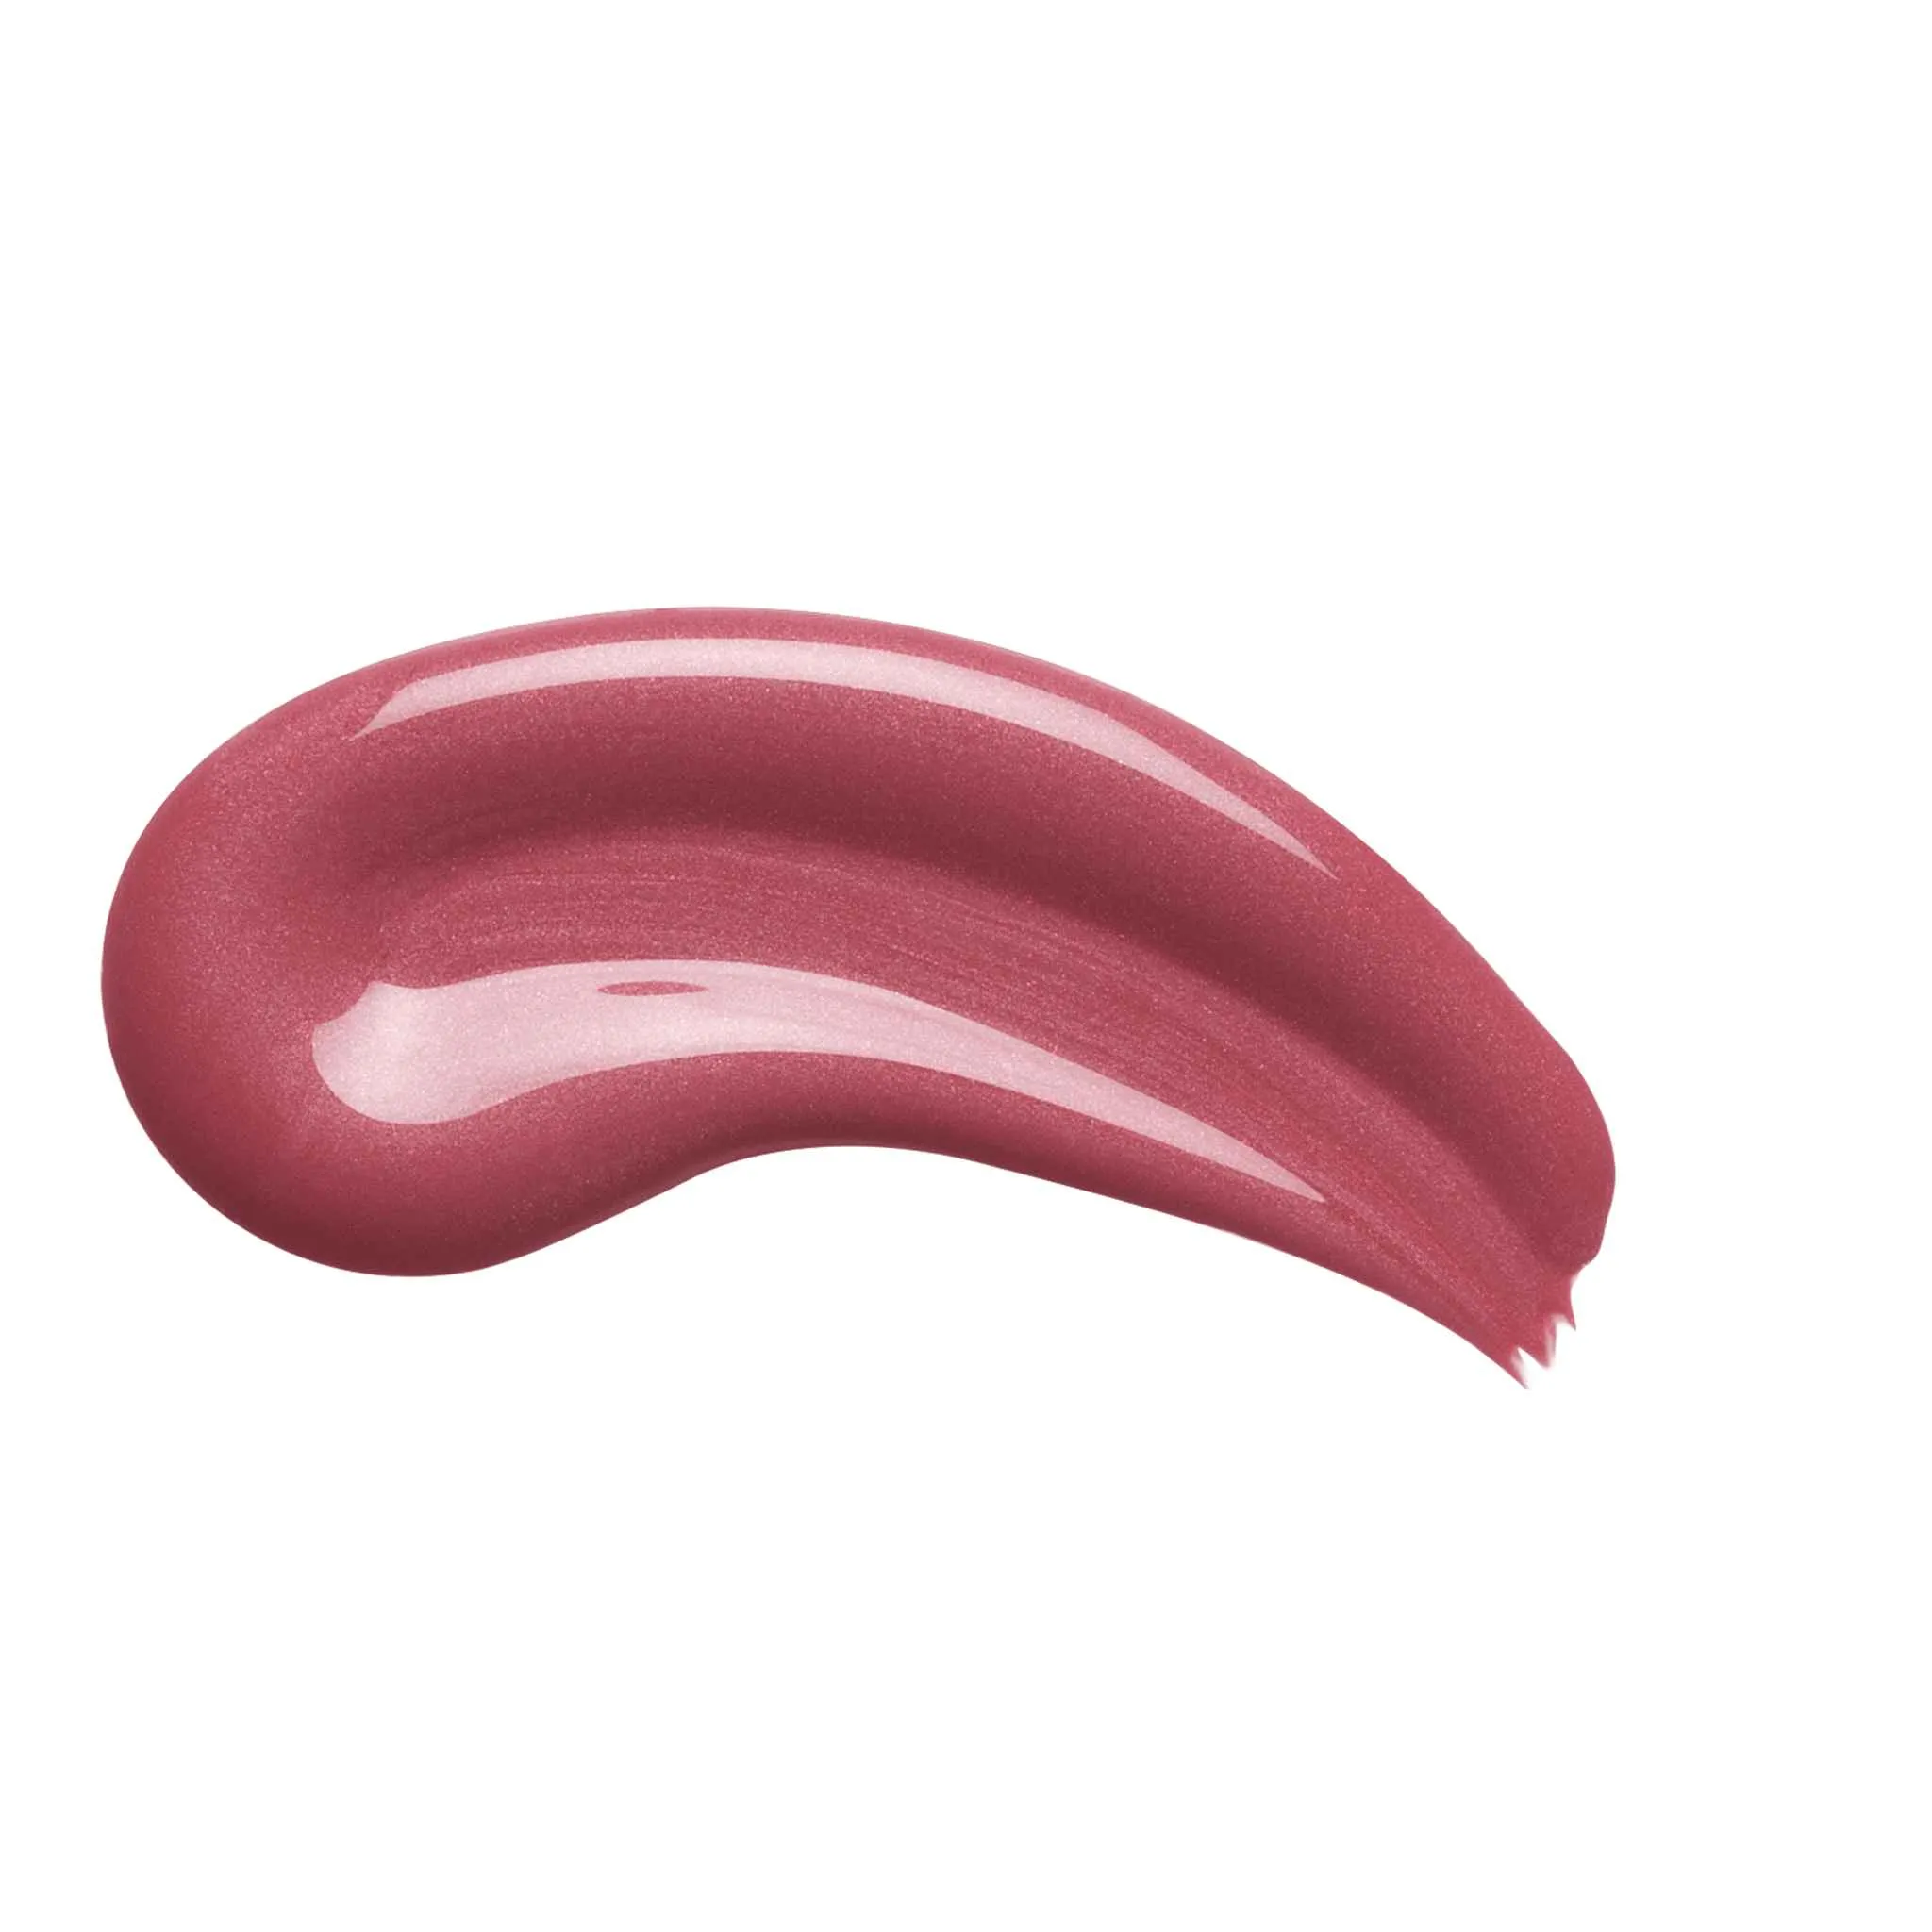 L´Oréal Paris Infaillible 24H Lip Color 804 Metroproof Rose rúž, 5,7 g 1×5,7 g, rúž